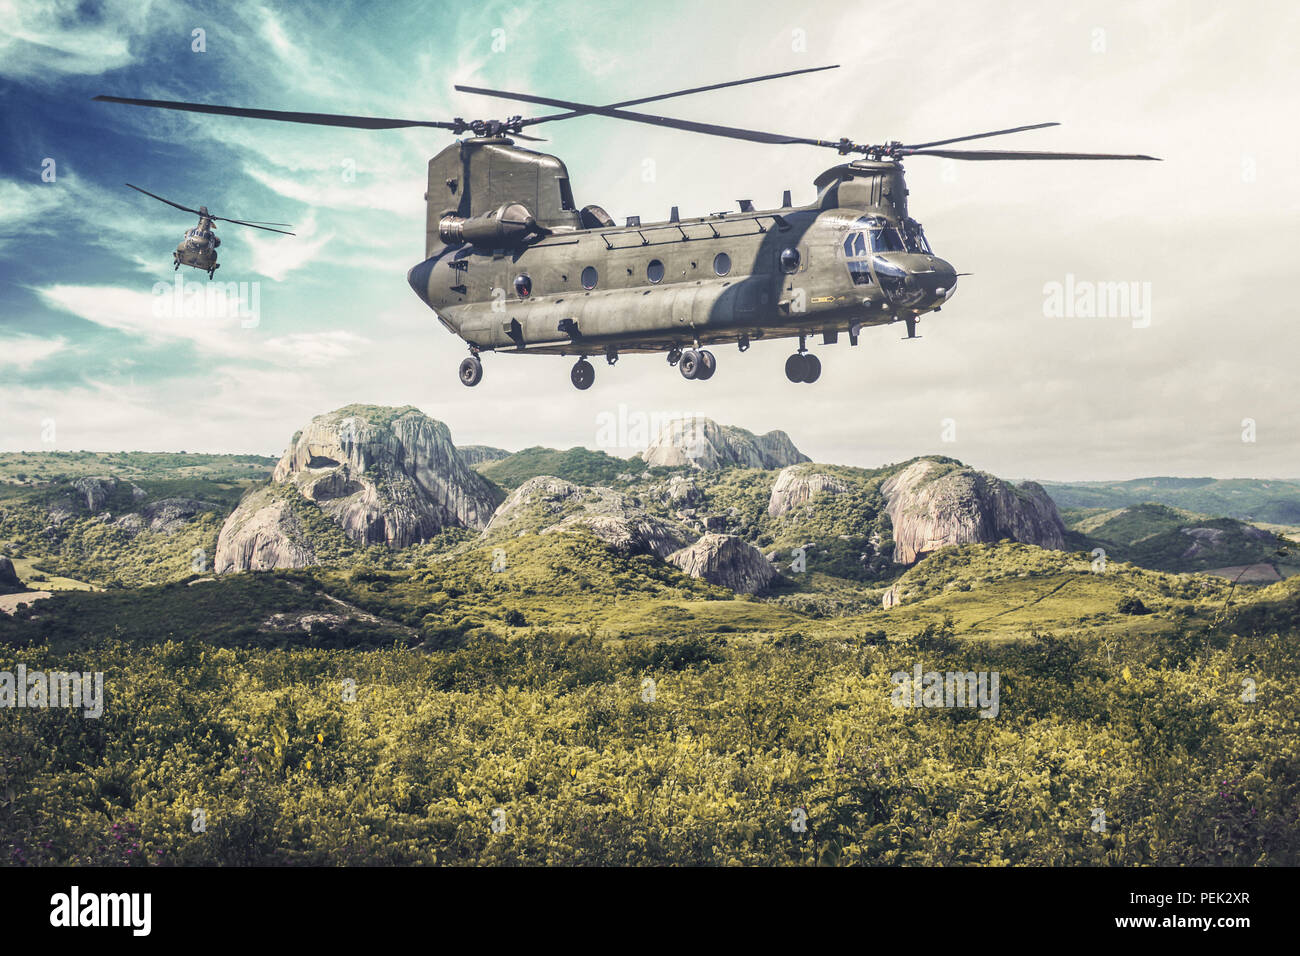 Bimoteur américain, tandem rotor, hélicoptère gros porteur survole un paysage vert Banque D'Images